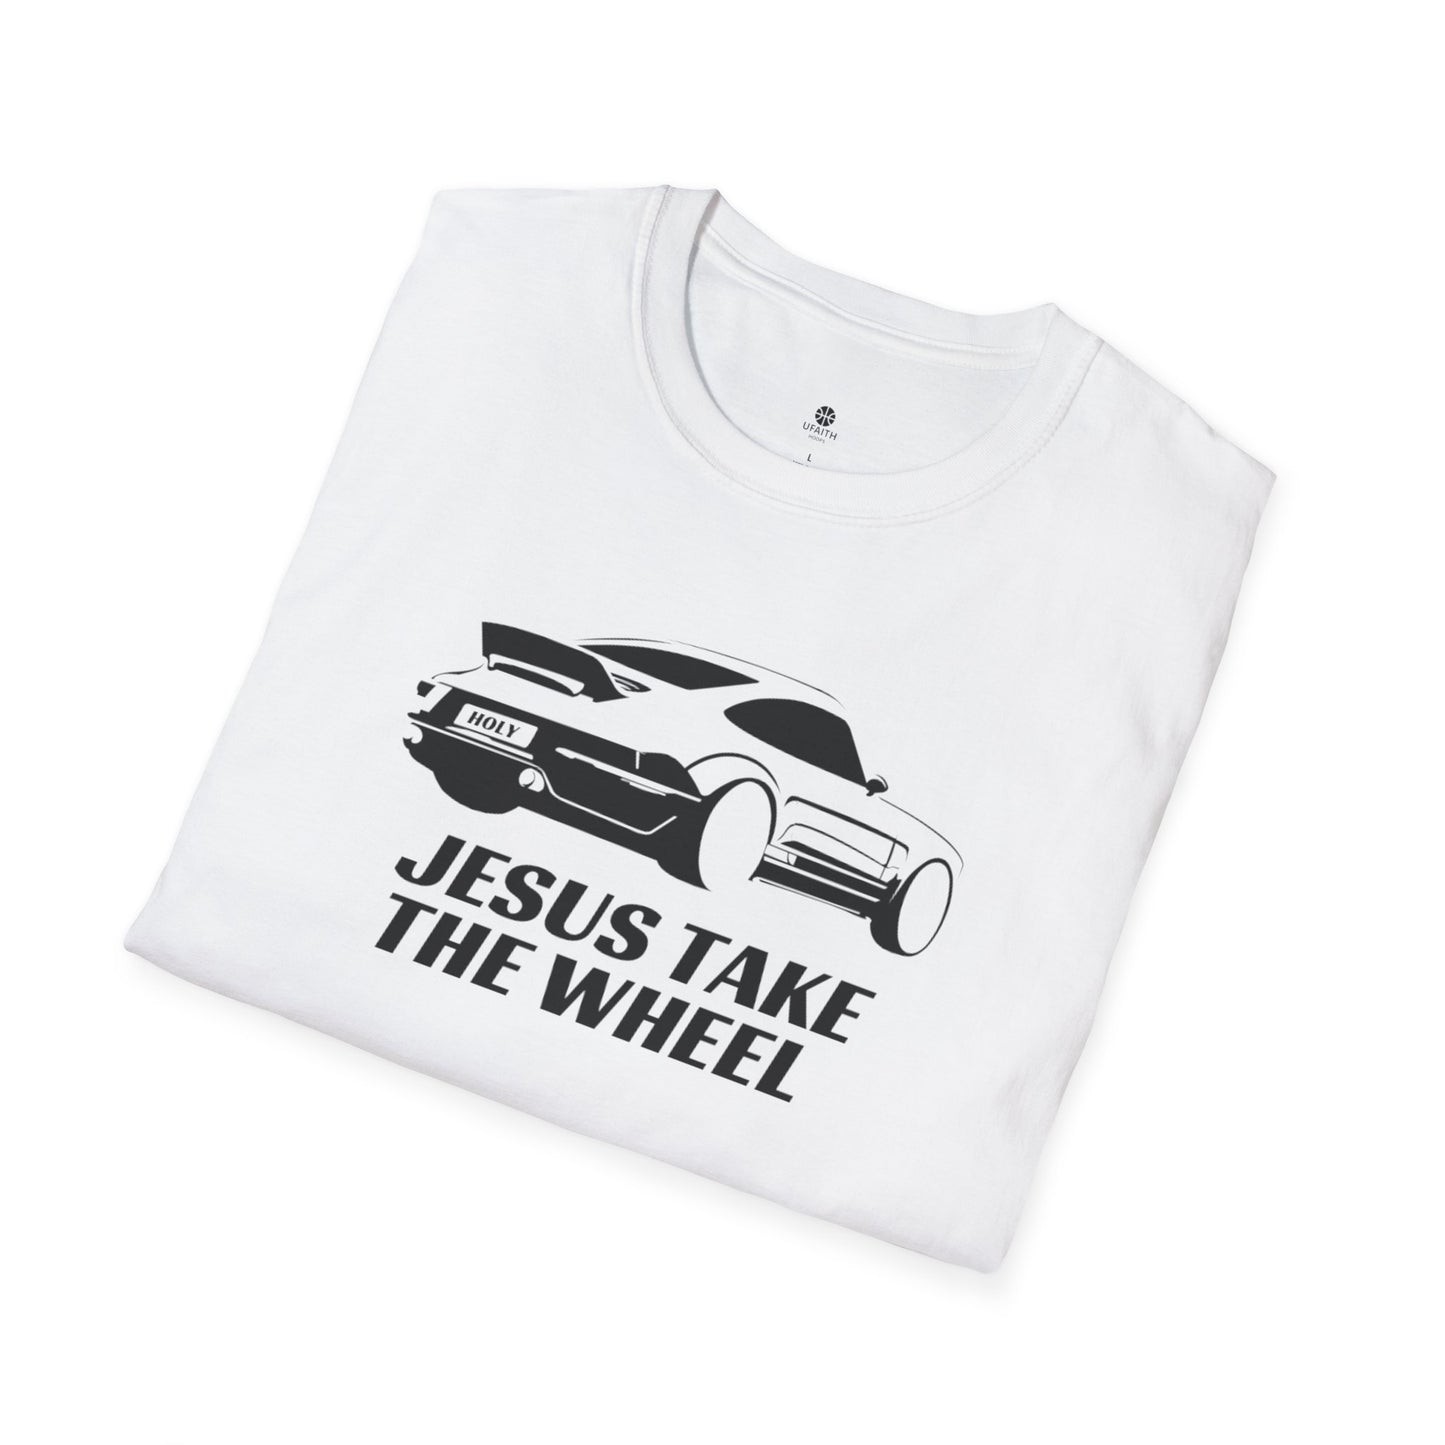 Jesus Take The Wheel T-Shirt